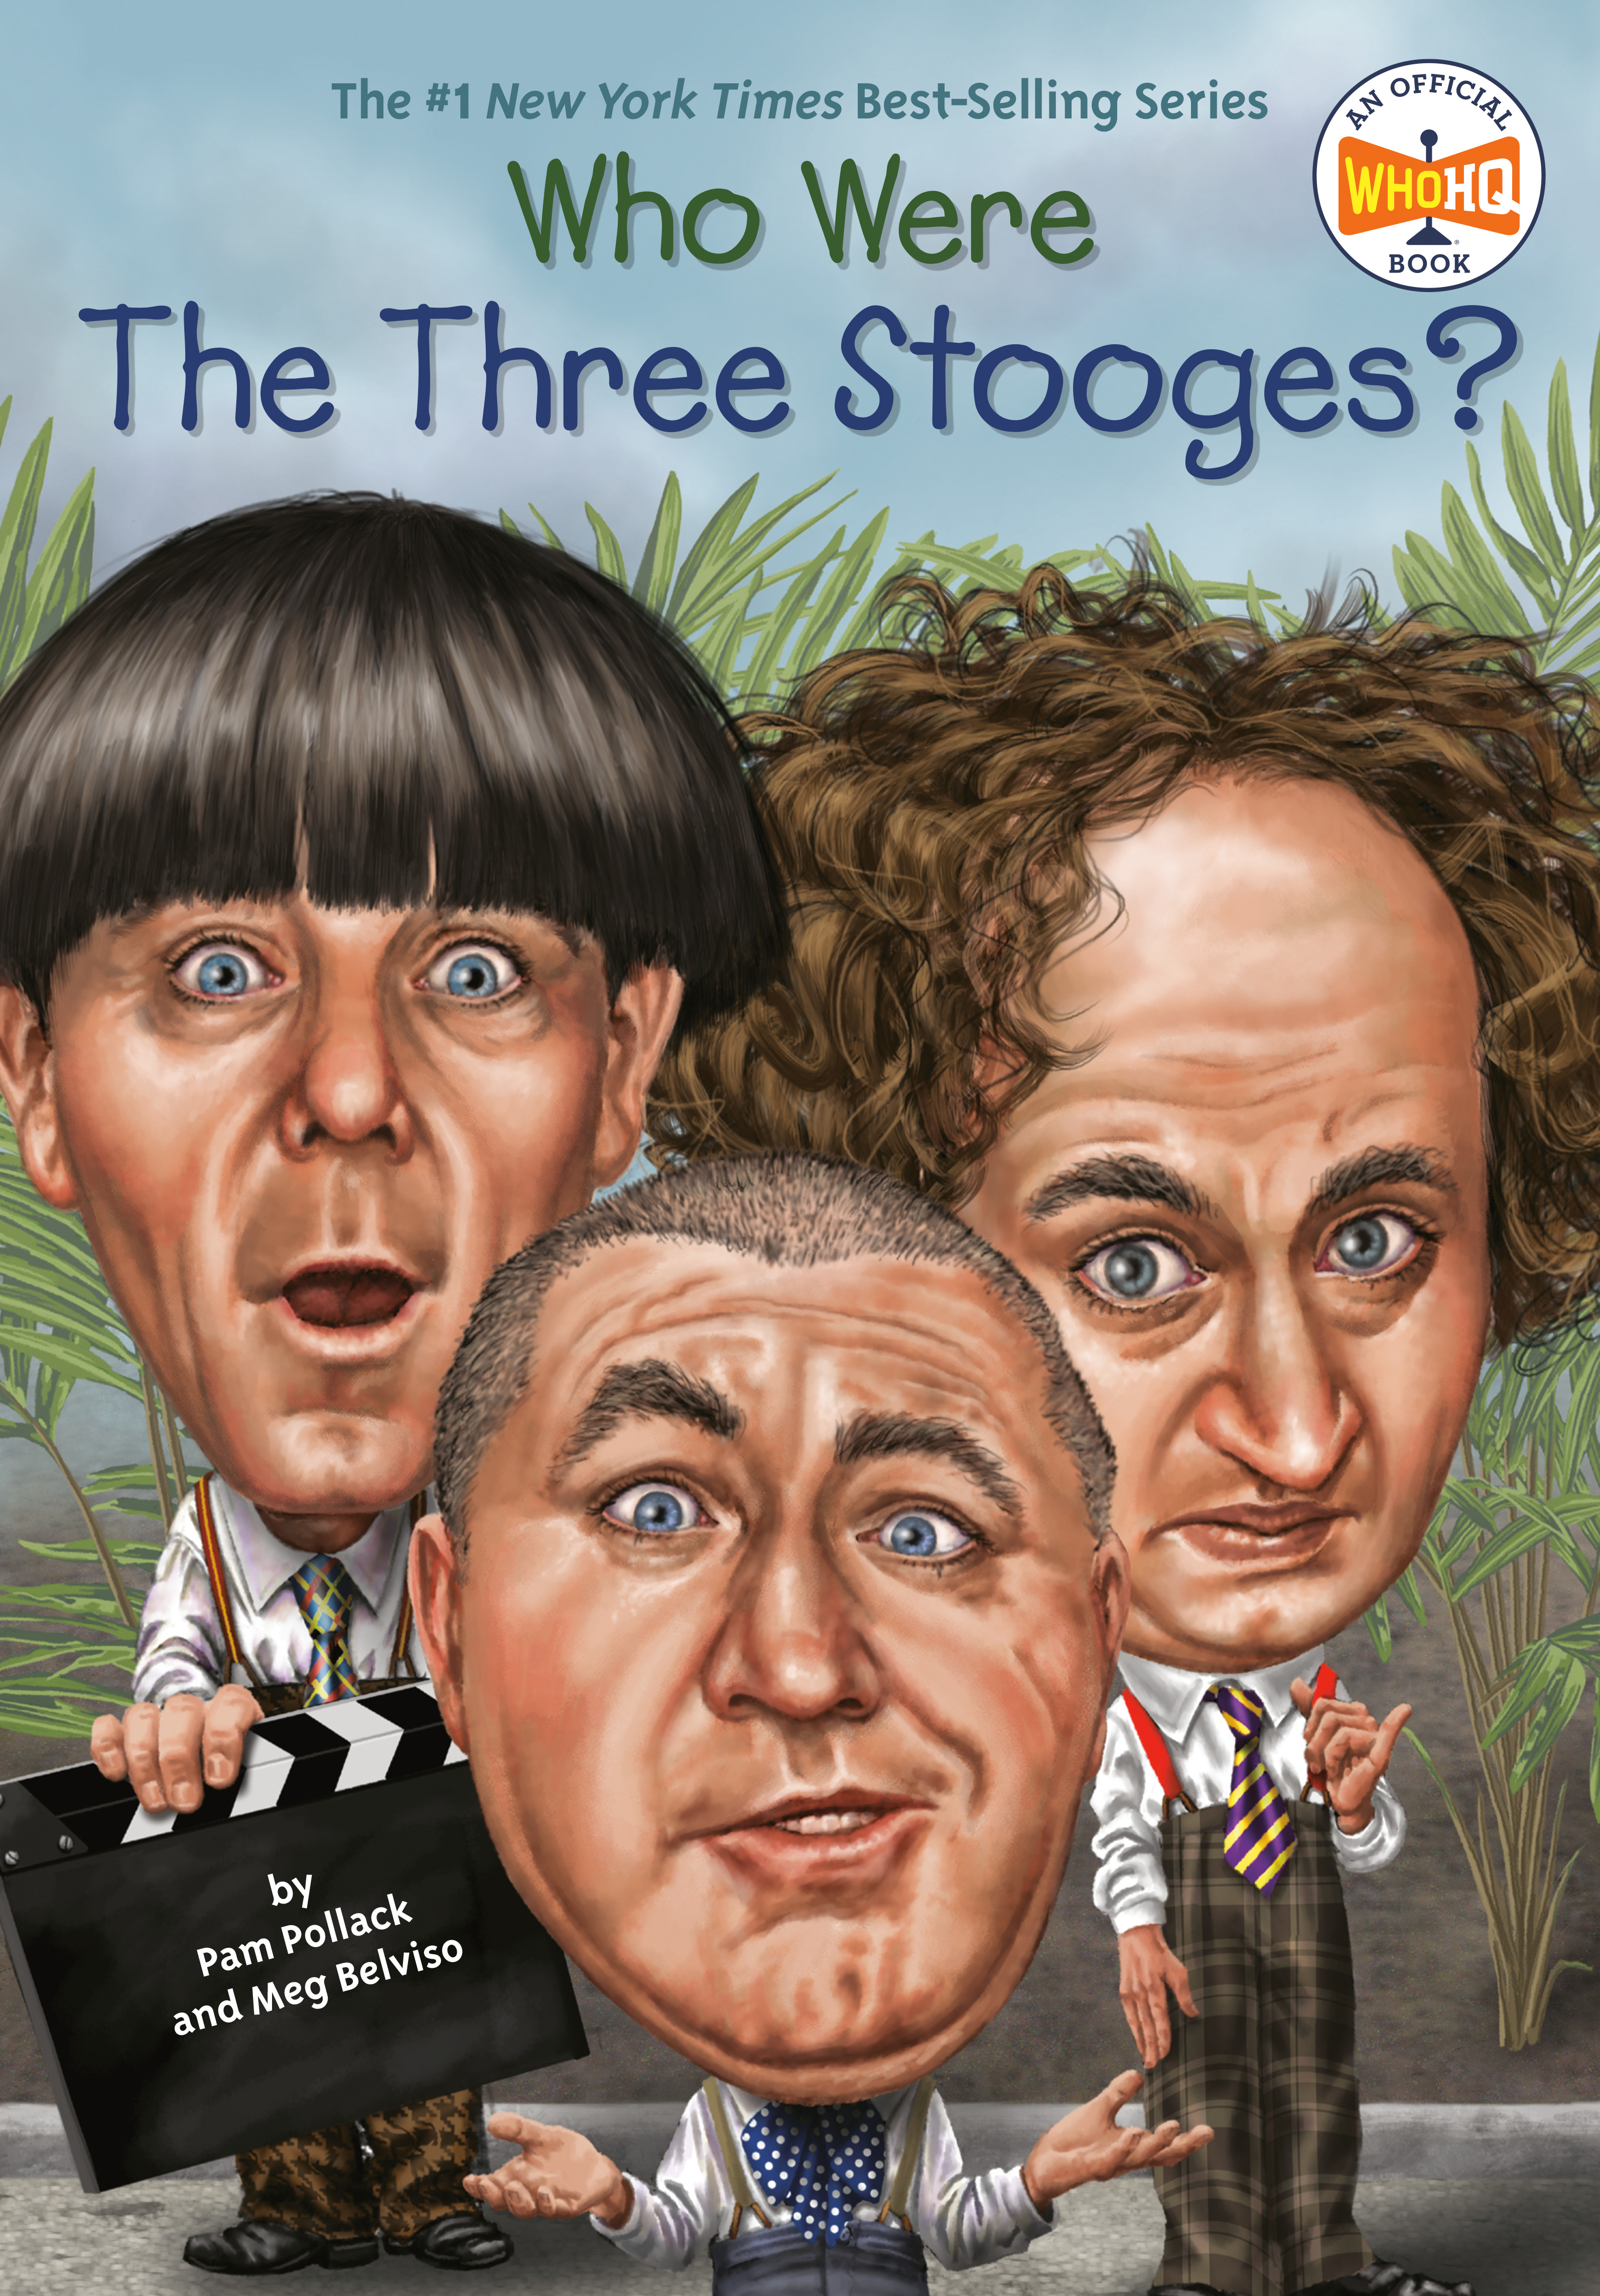 Who Were The Three Stooges? | Pollack, Pam (Auteur) | Belviso, Meg (Auteur) | Hammond, Ted (Illustrateur)